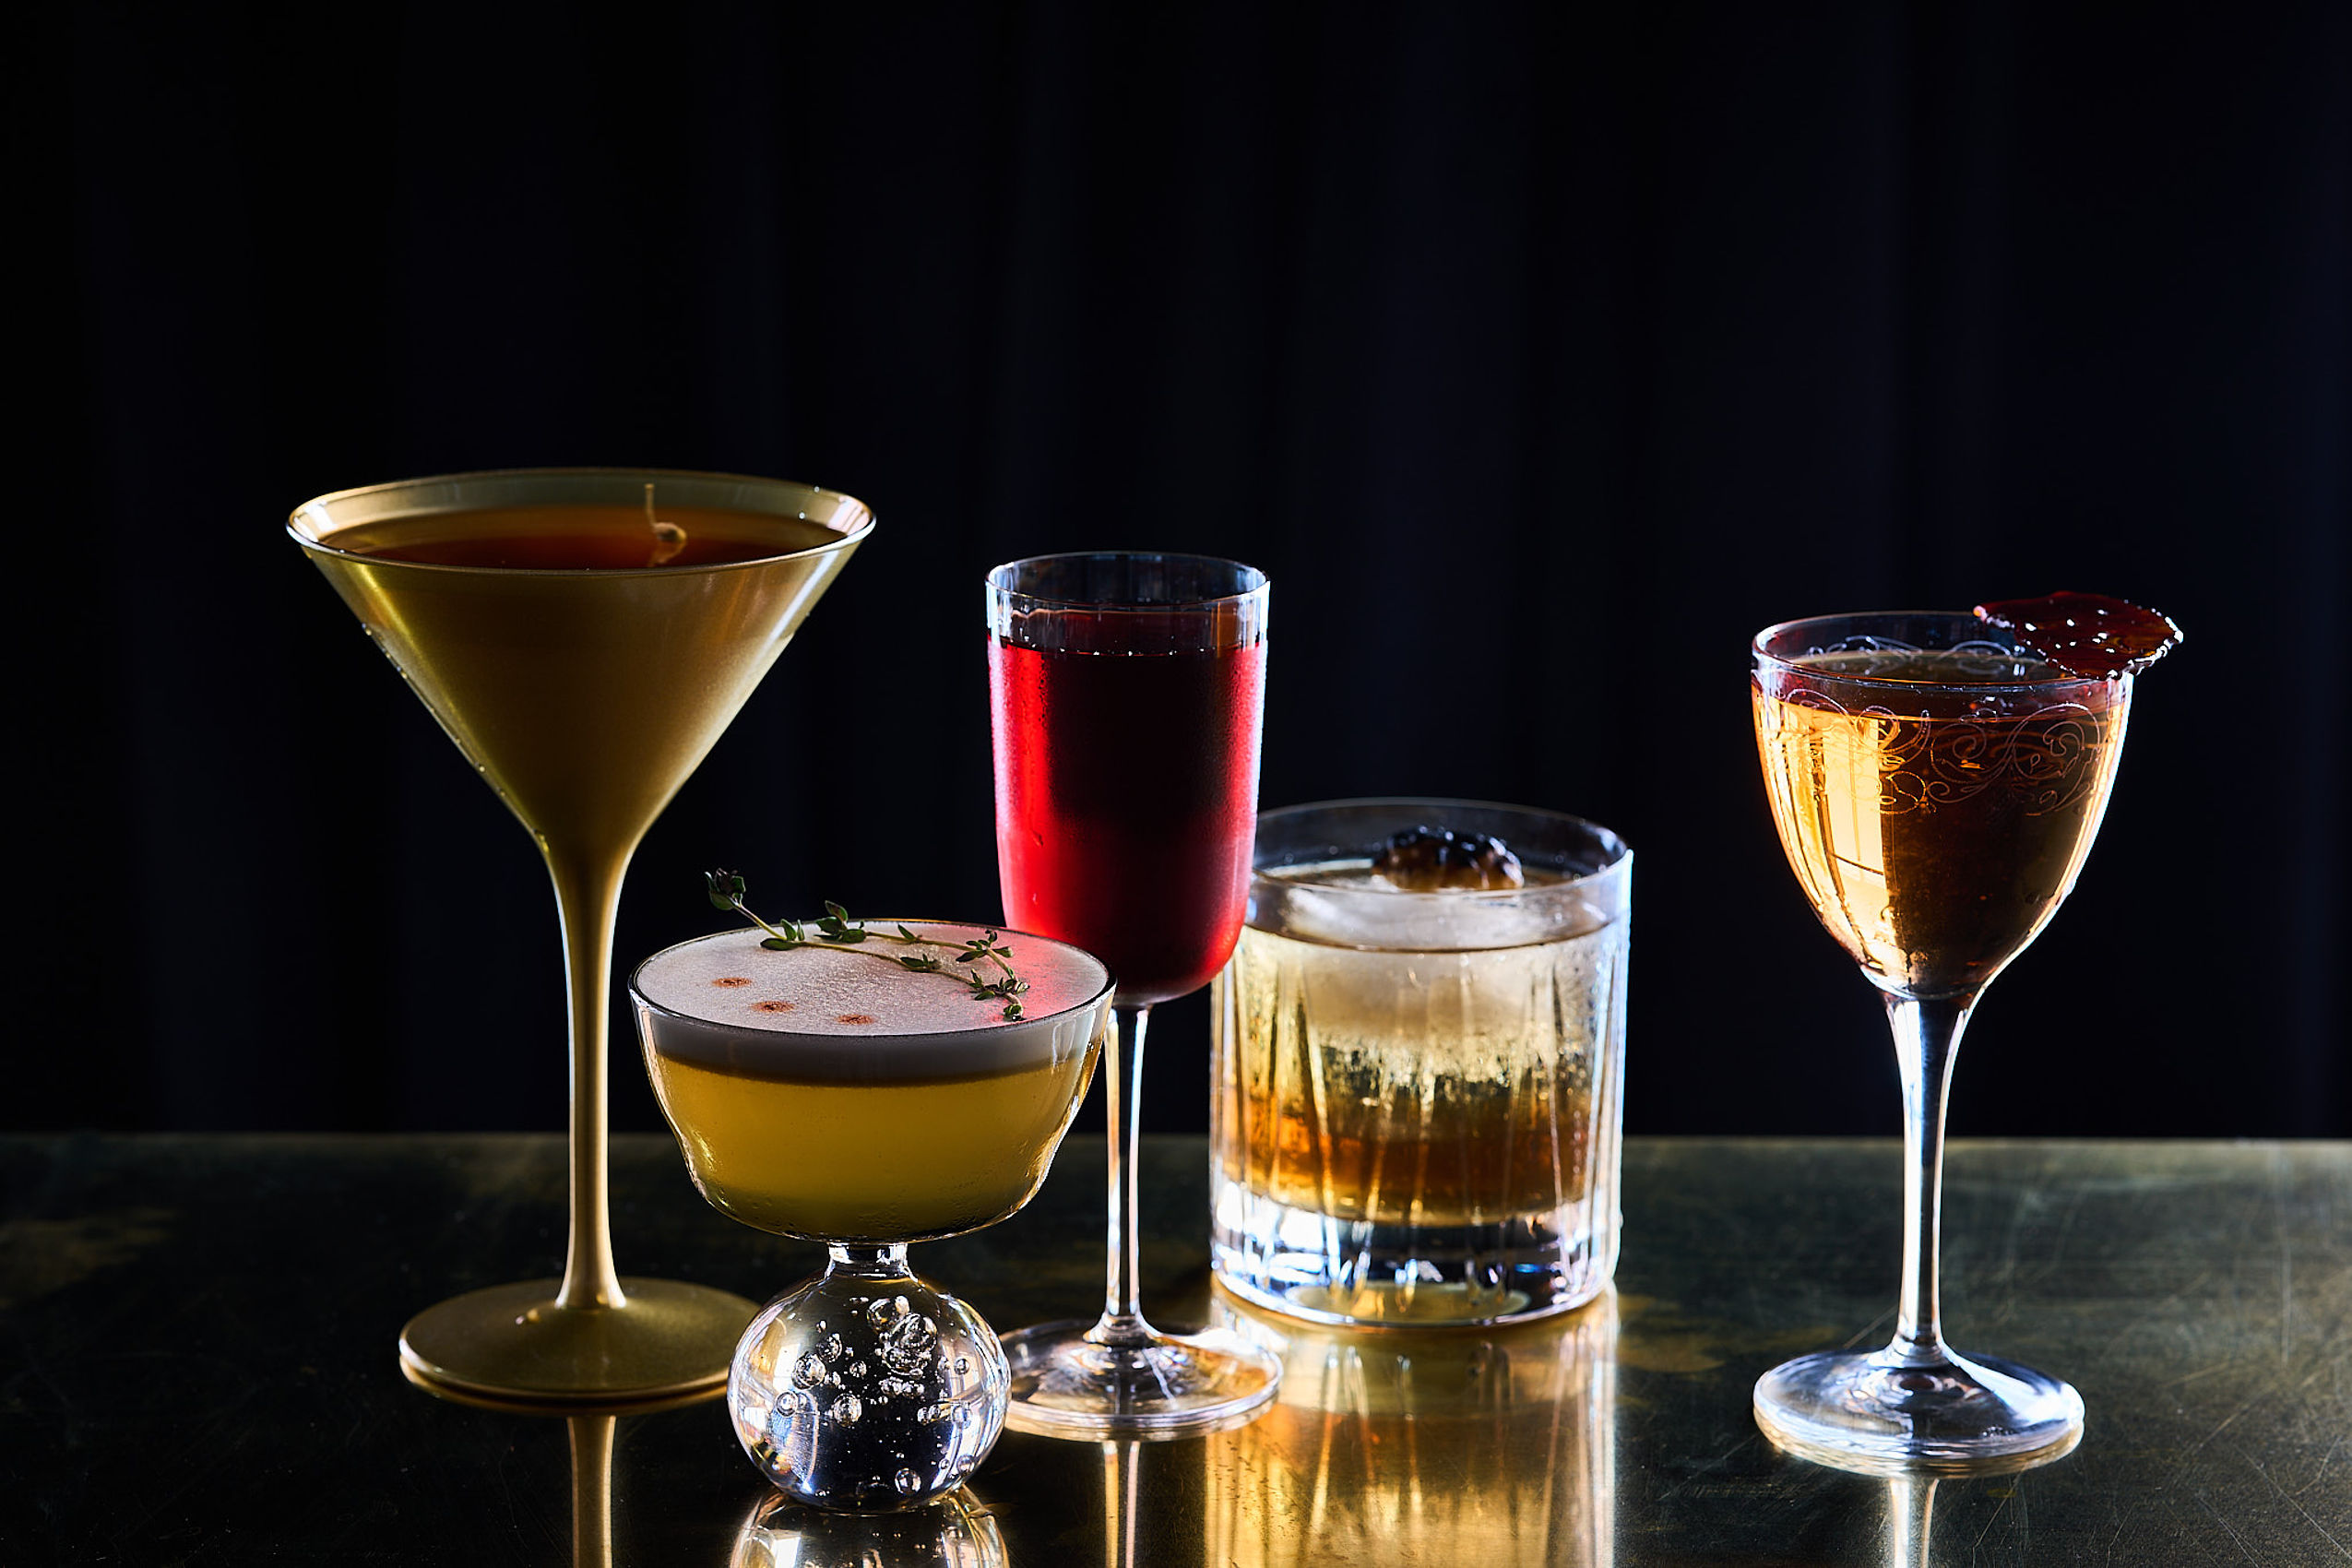 Mehrere Cocktails und Drinks in verschiedenen Gläsern stehen auf einem beleuchteten Tisch